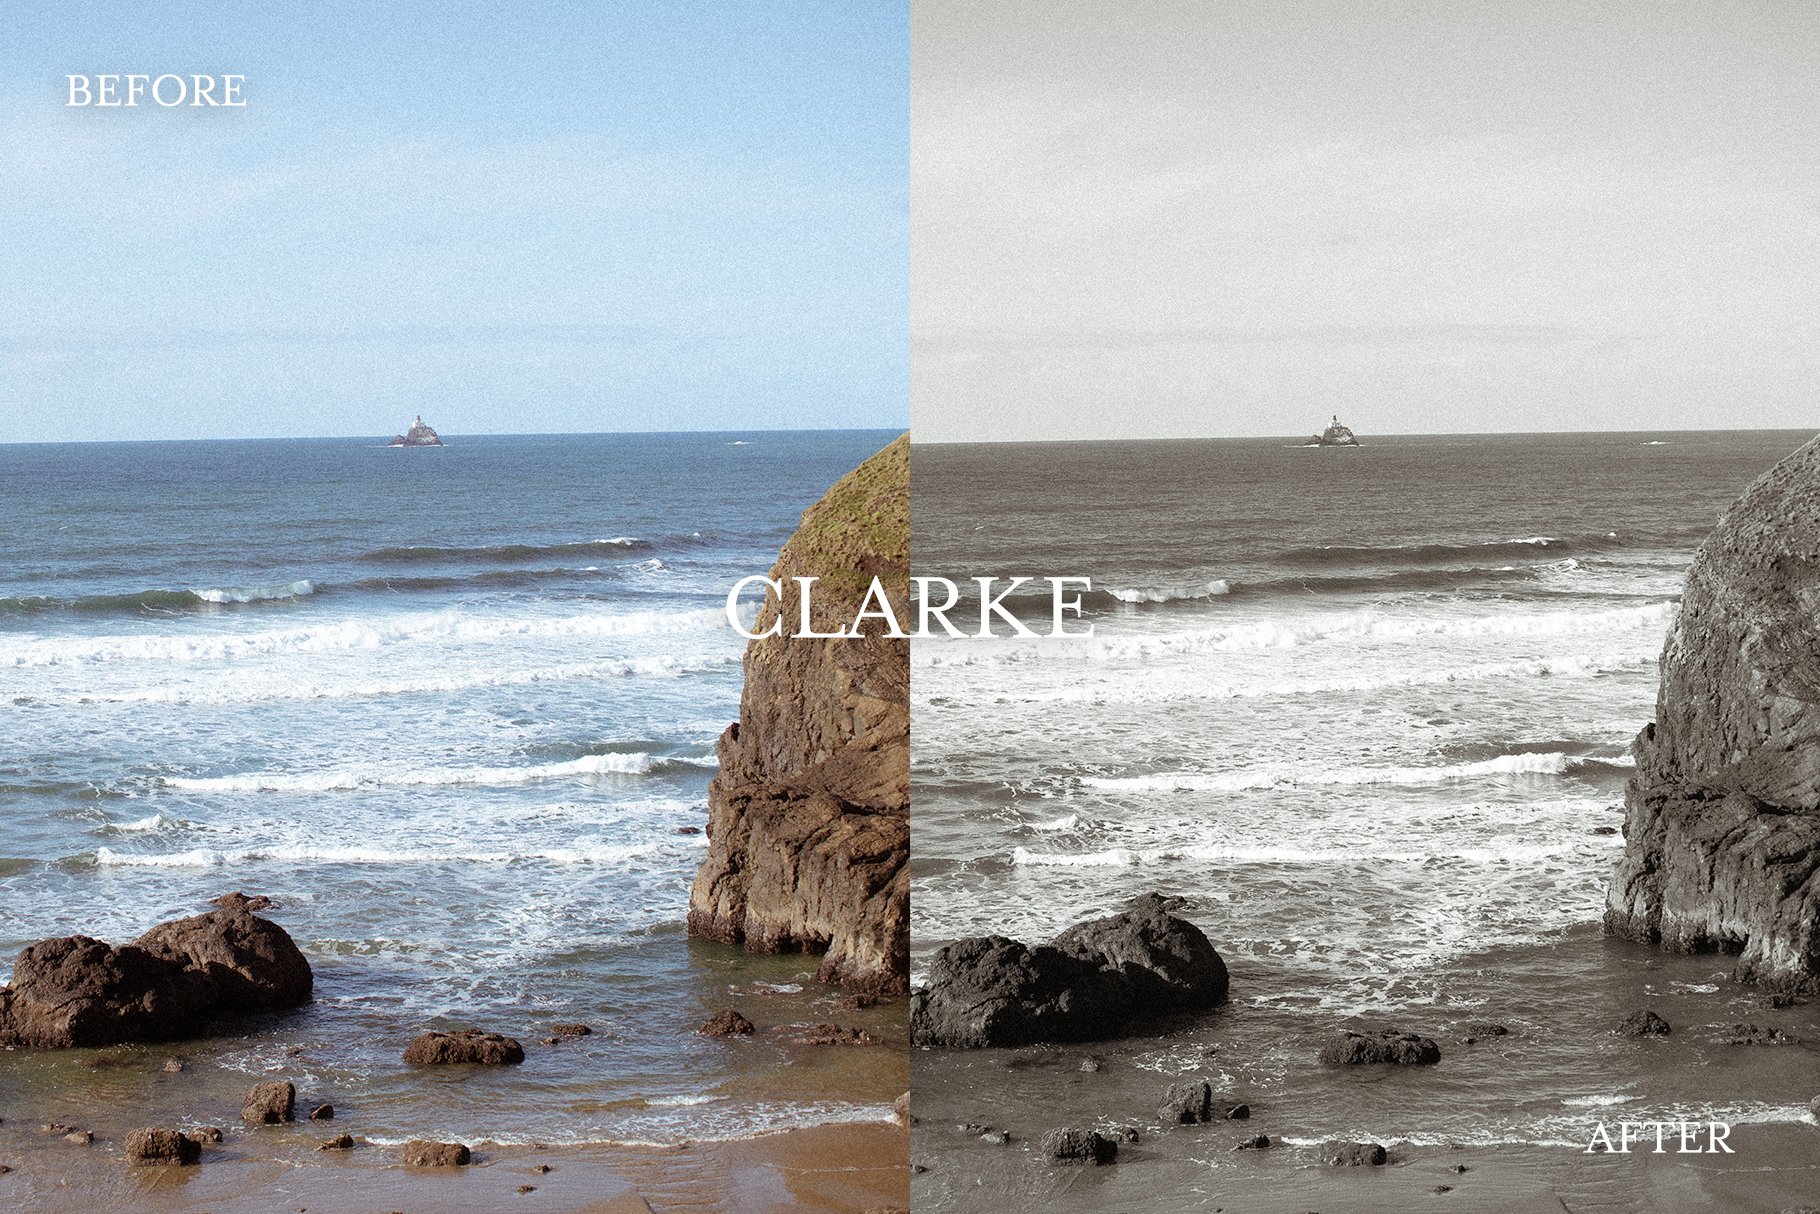 Clarke – Vintage Lightroom Presetcover image.